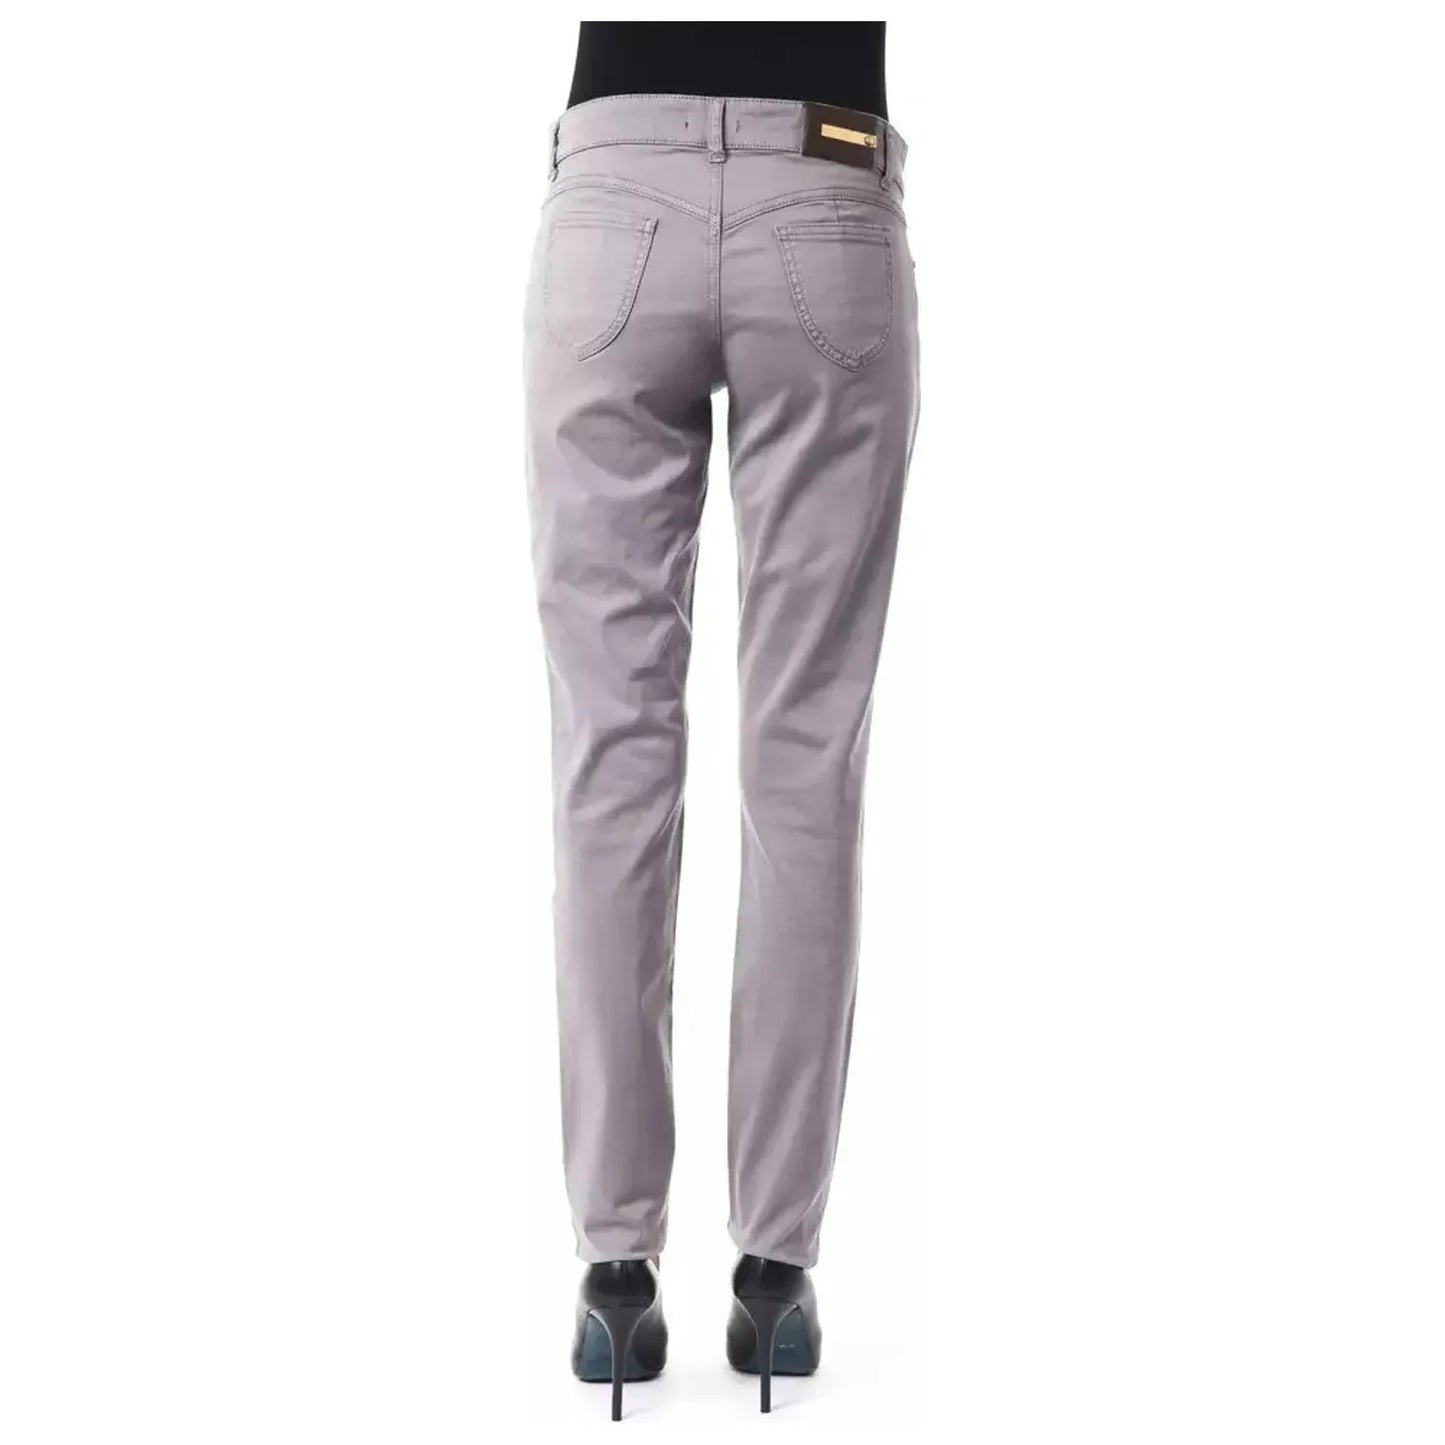 BYBLOS Chic Gray Cotton Blend Pants gray-cotton-jeans-pant-14